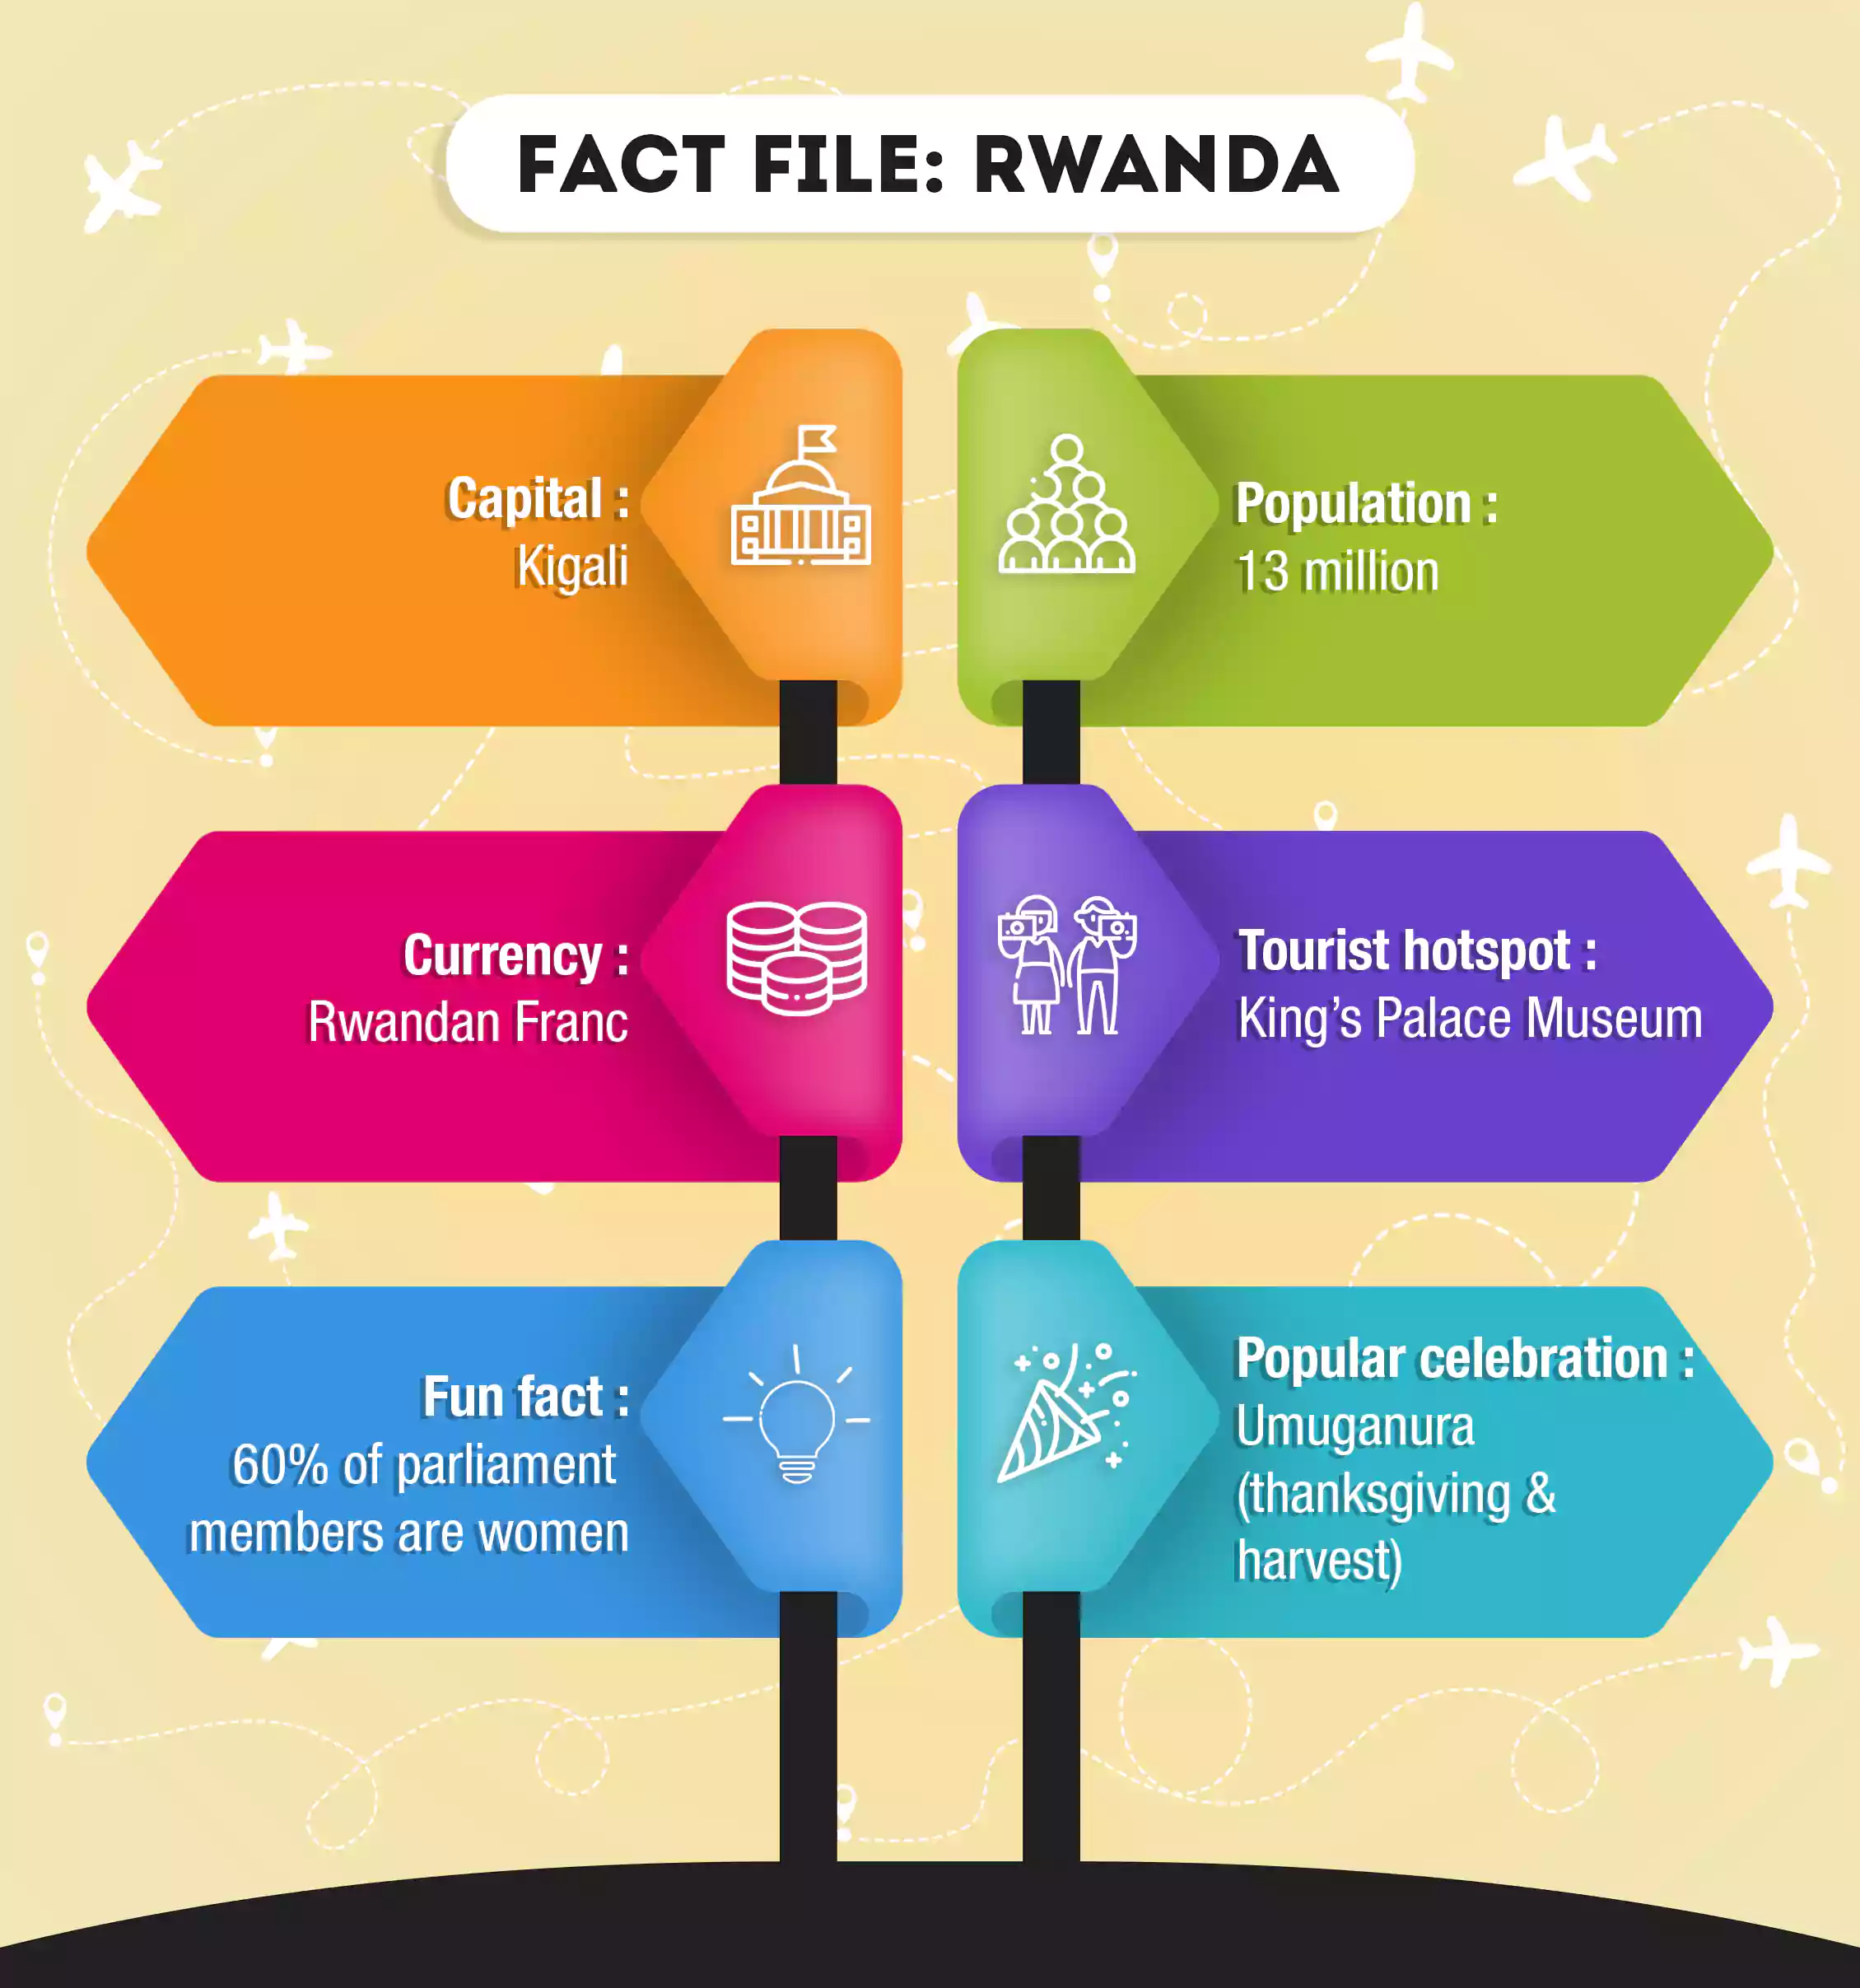 A fact file about Rwanda